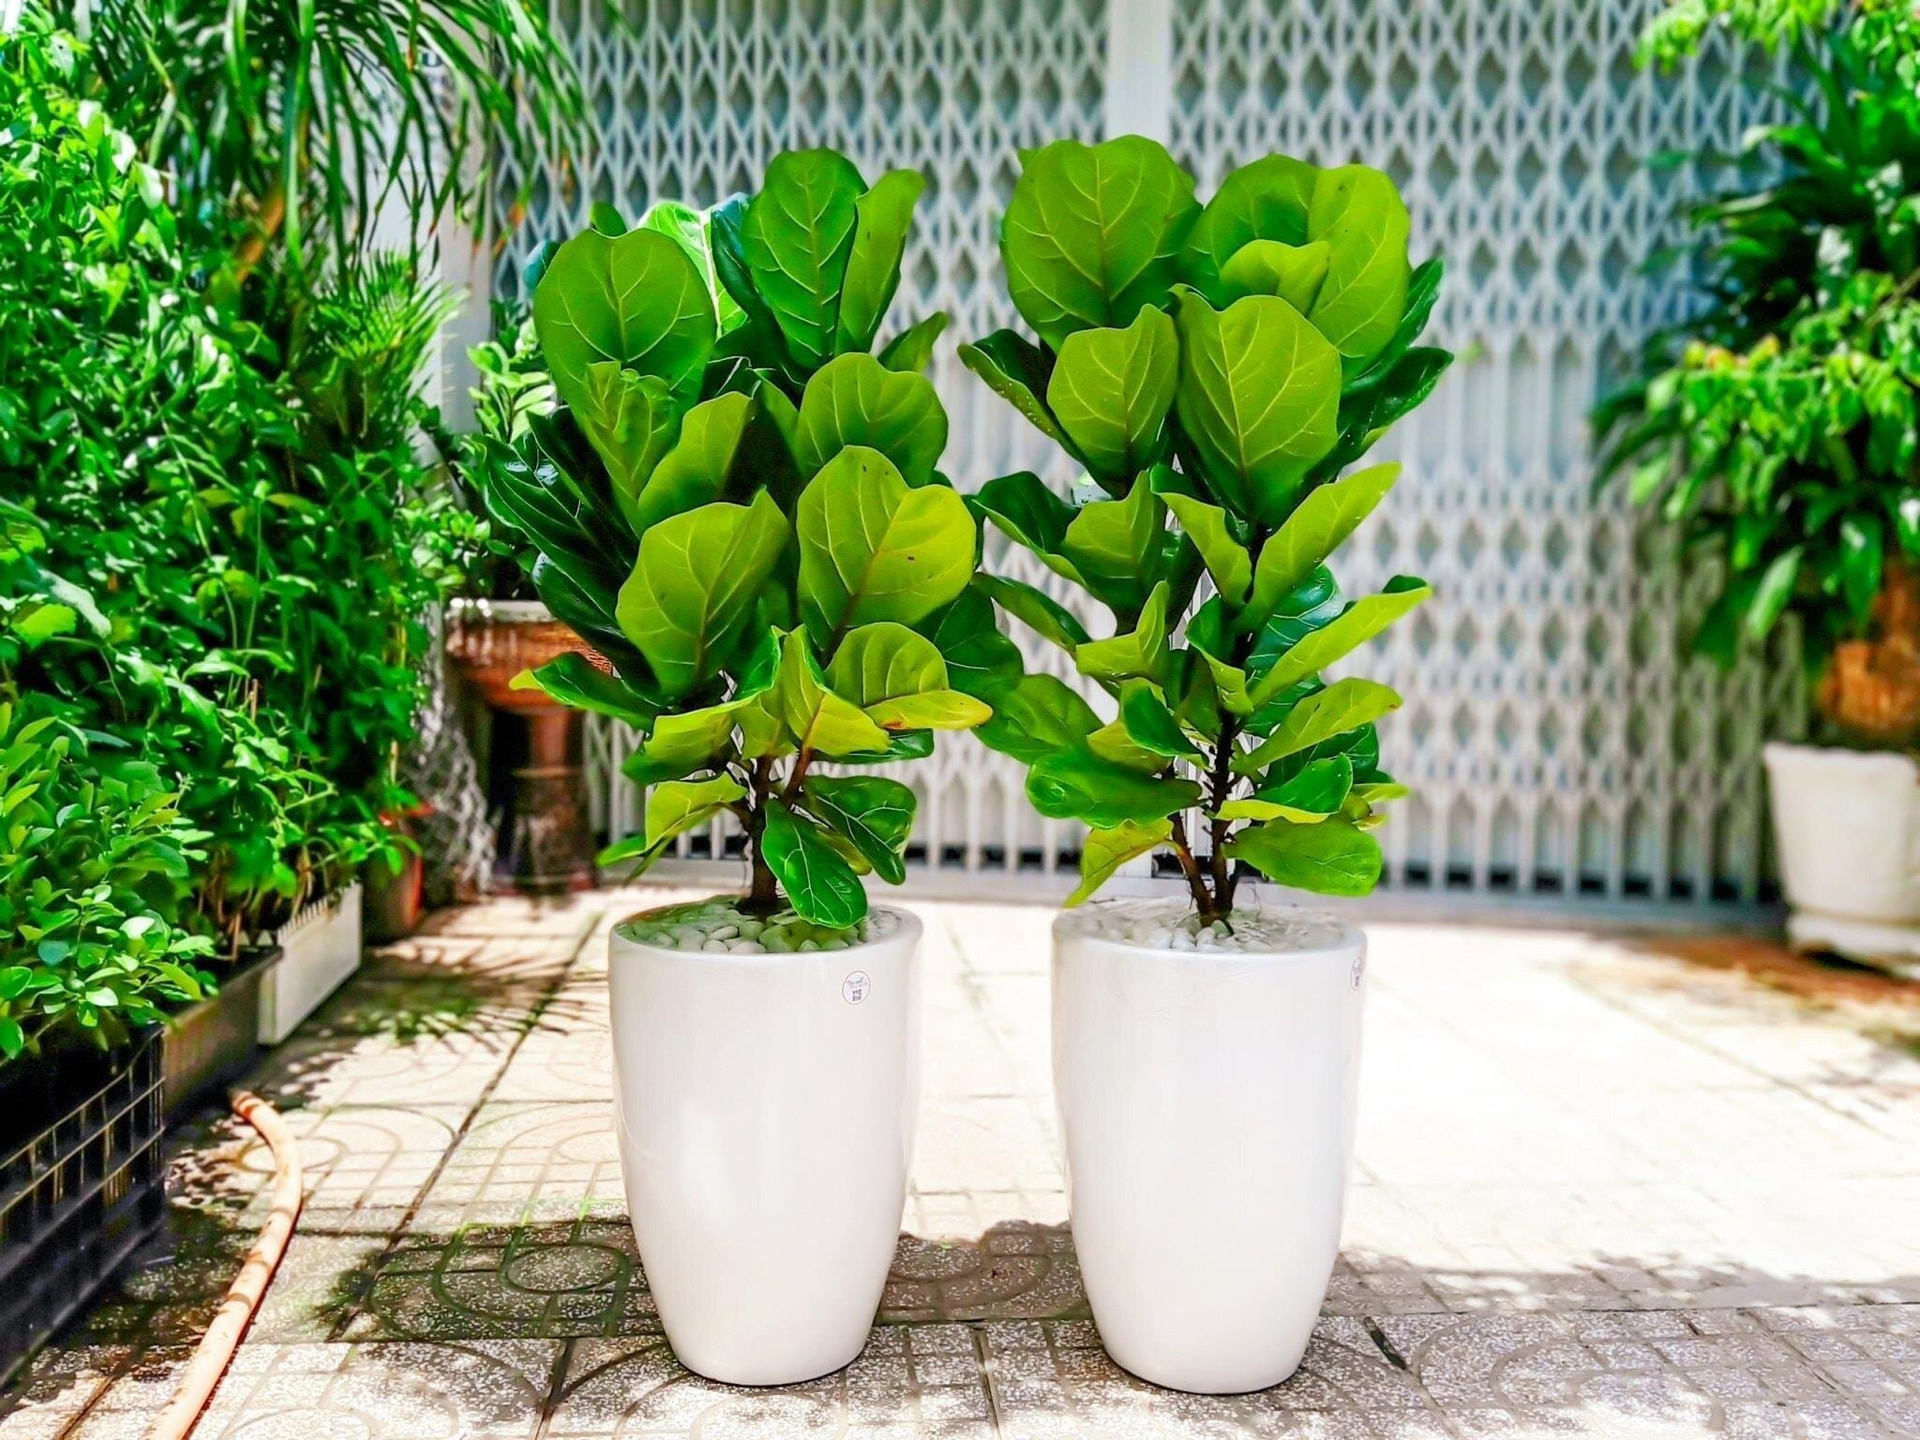 Cây bàng singapore trồng trong chậu thấp hay chậu cao đều đẹp. (Ảnh: Martha Stewart)